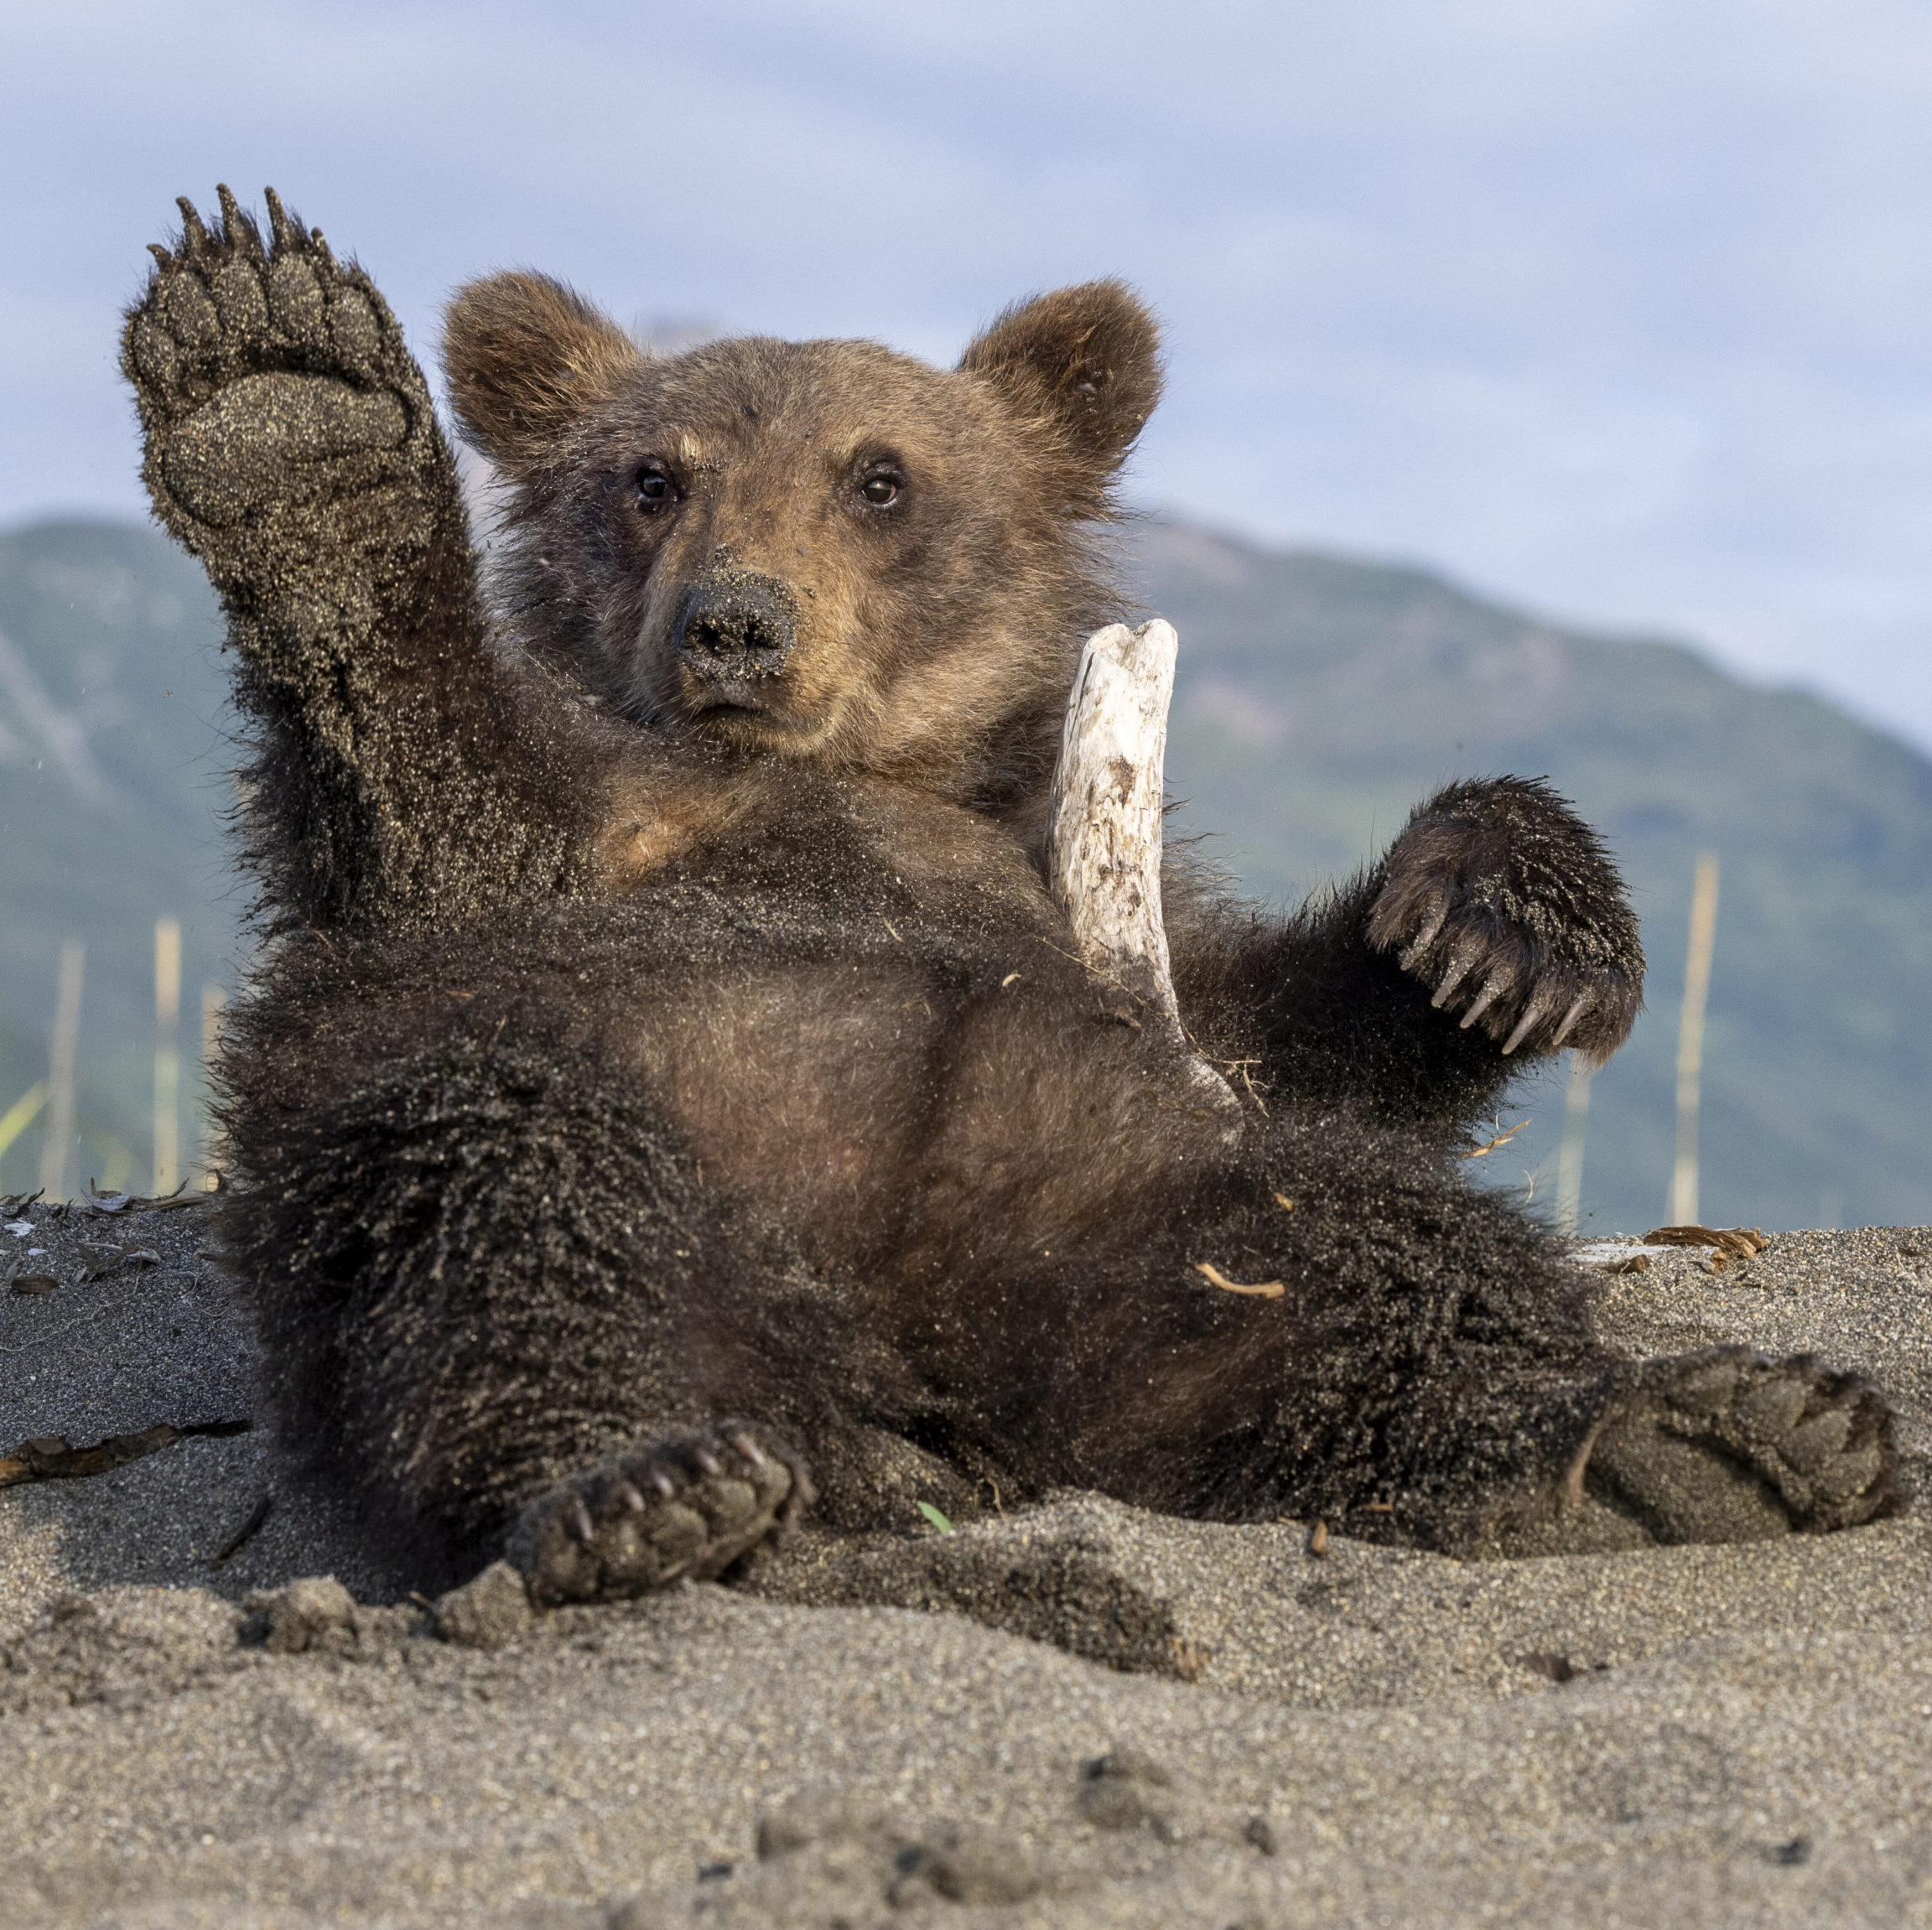 Bear cub on sandy beach with stick